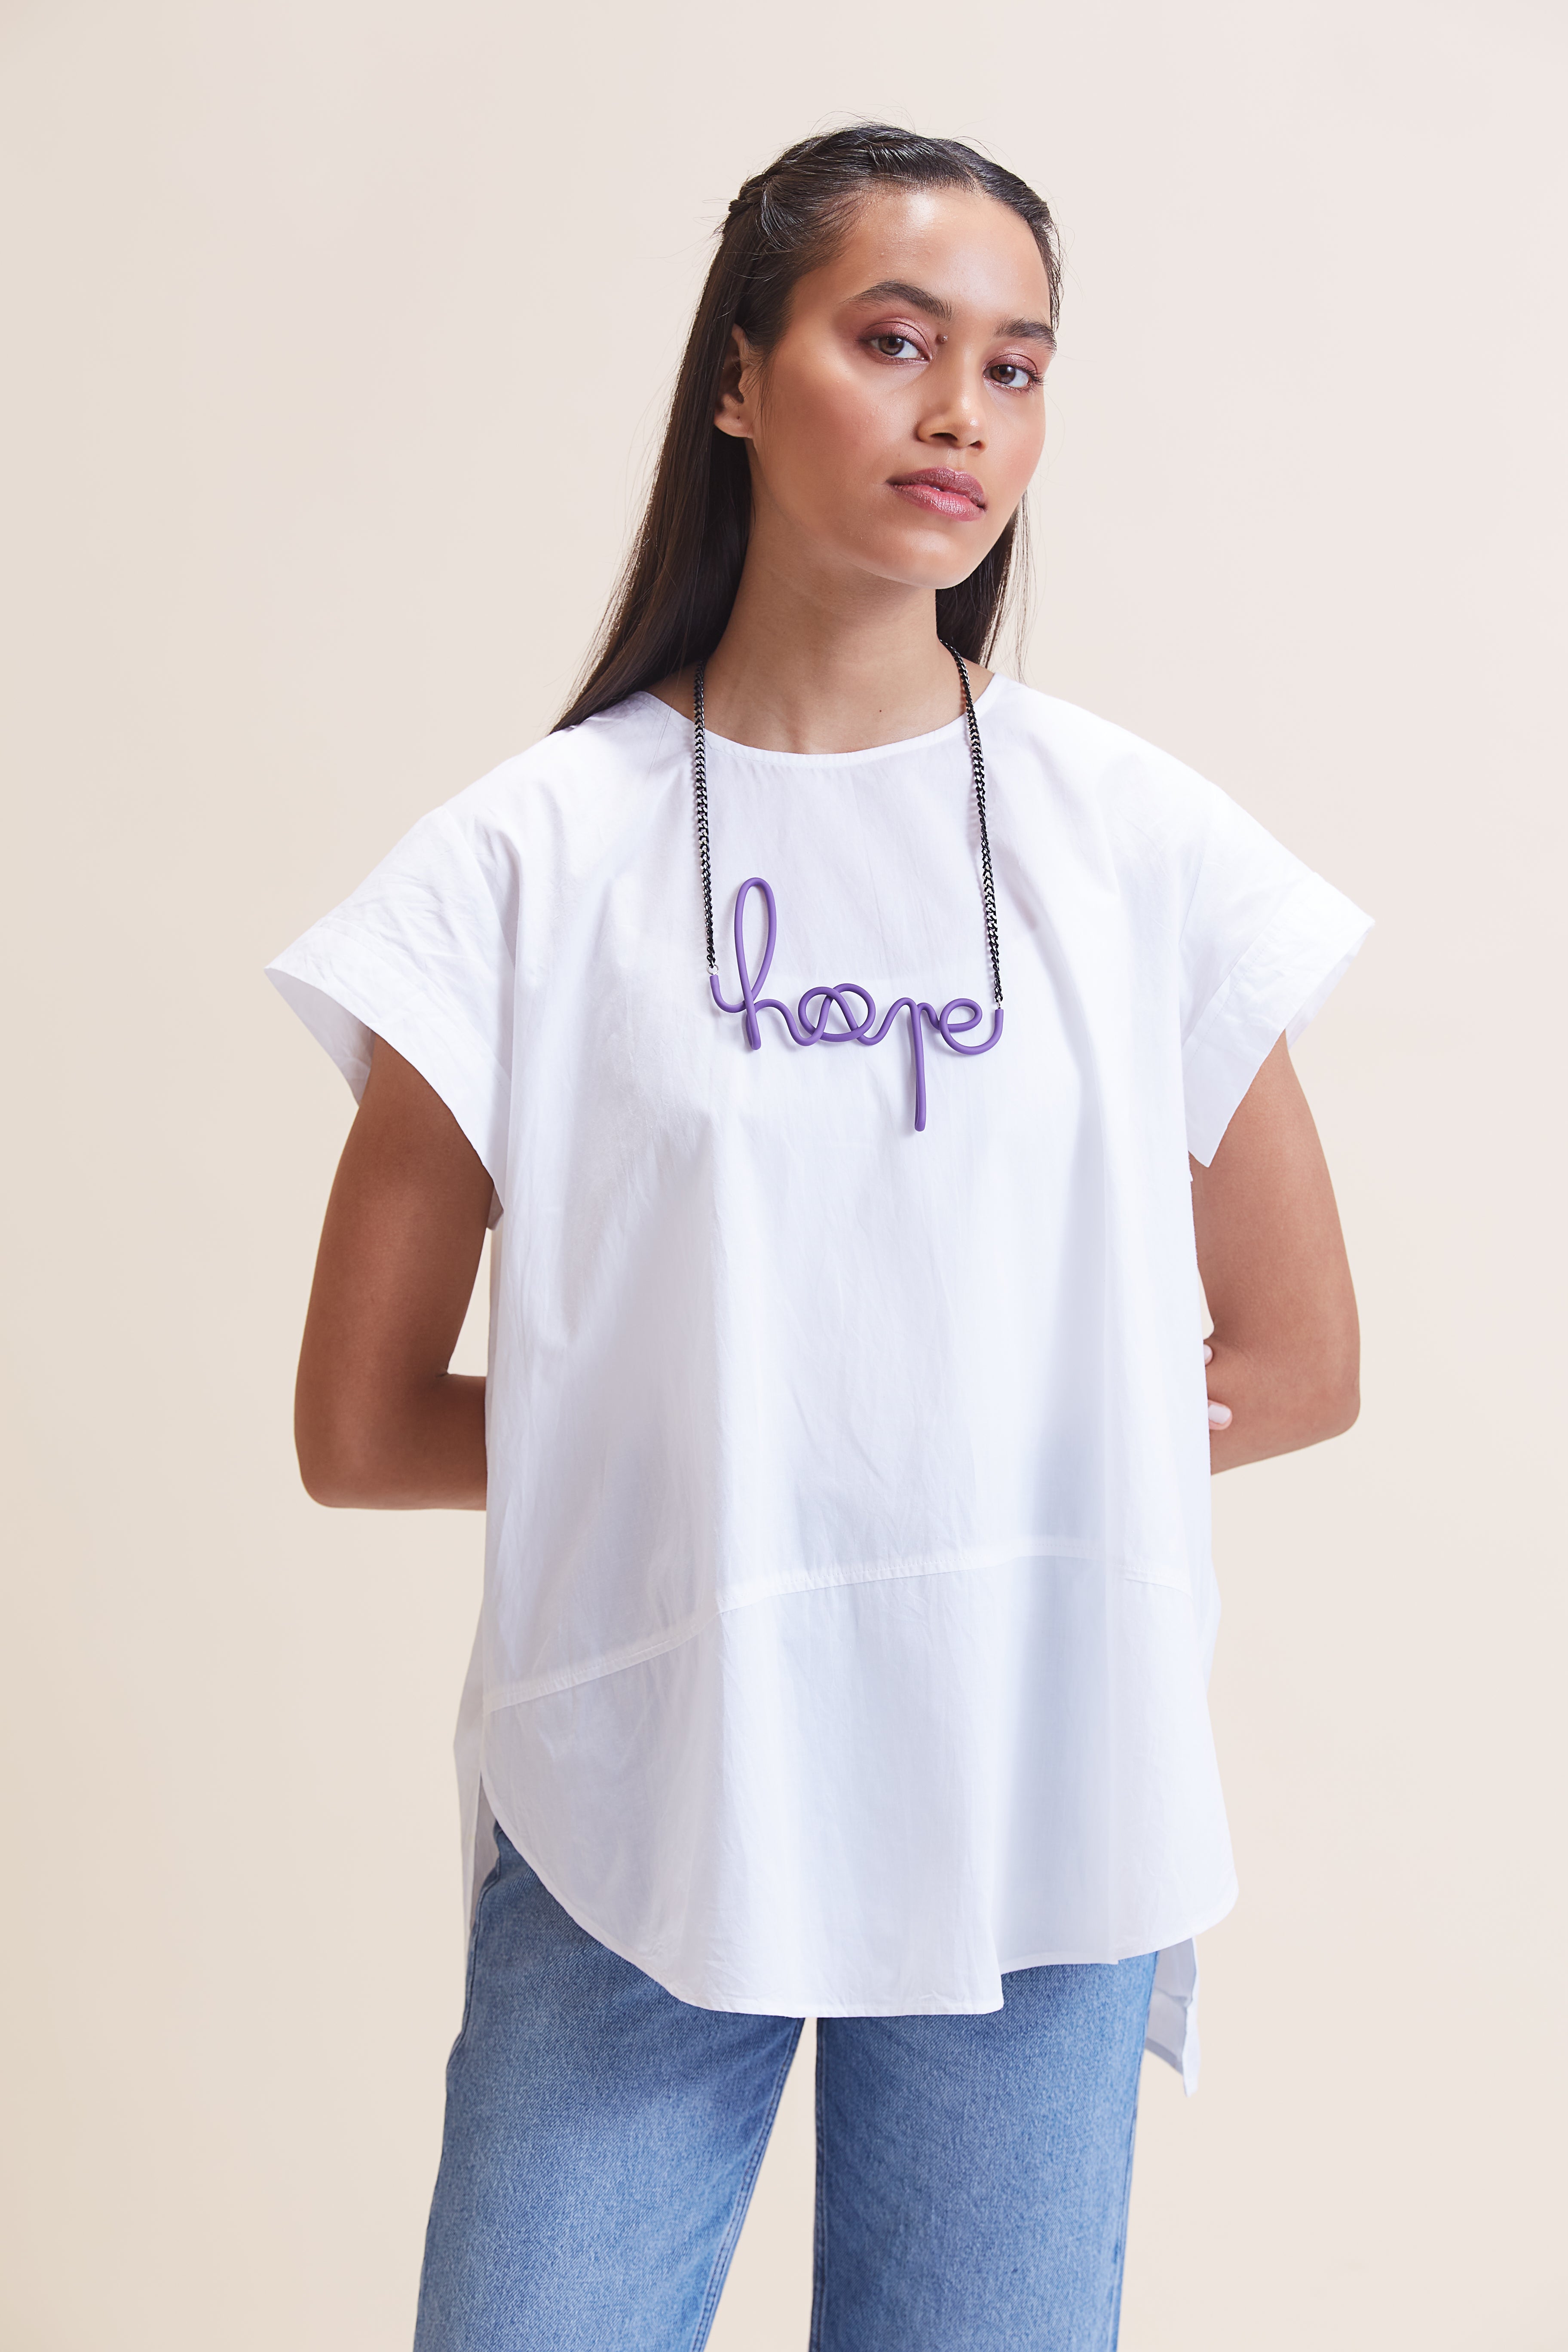 Hope Necklace Short - Purple